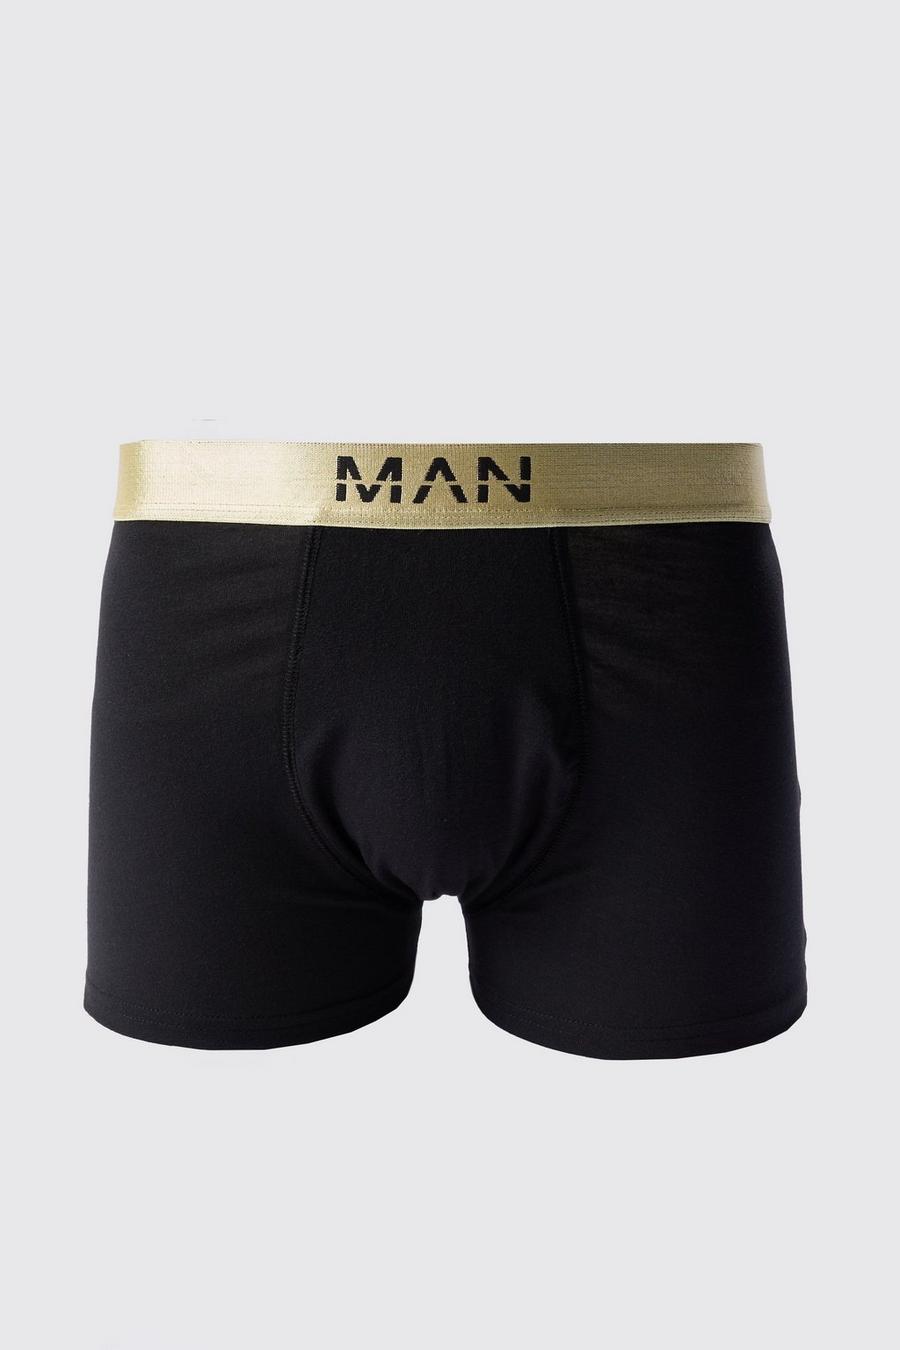 Schwarze Man-Dash Boxershorts mit Gold-Bund, Black